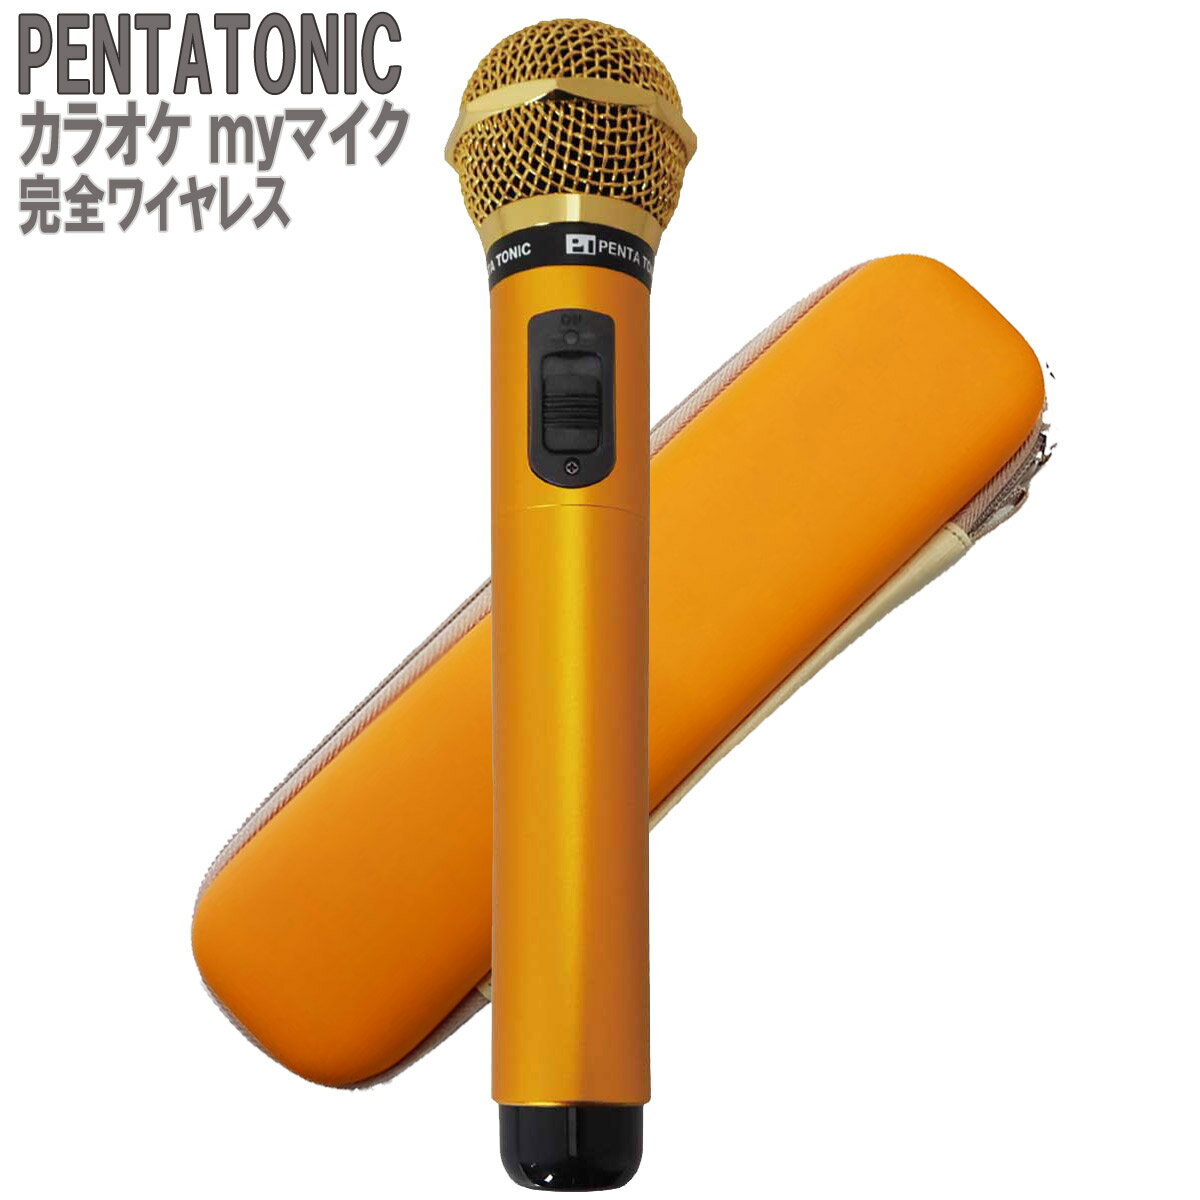 PENTATONIC カラオケマイク GTM-150 ゴールド 専用ケースセット カラオケ用マイク 赤外線ワイヤレスマイク DAM/ JOY SOUND ペンタトニック GMT150